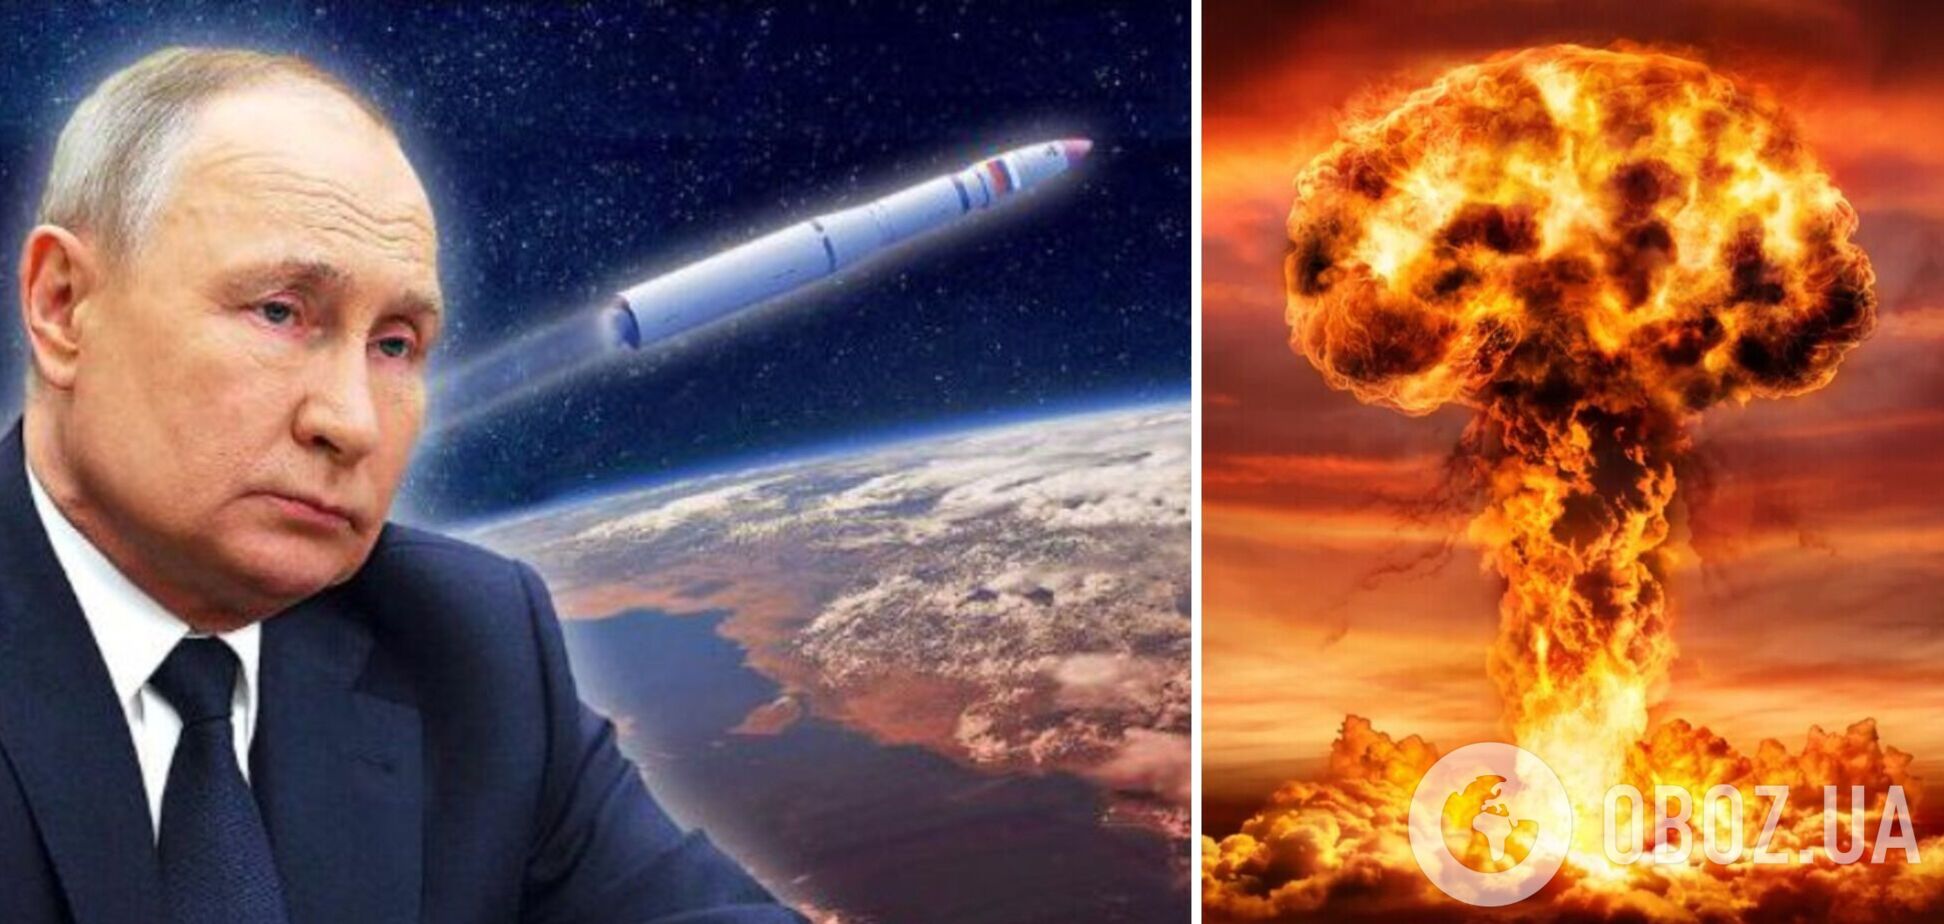 Російська ядерна зброя в космосі – черговий блеф Путіна для шантажу 'колективного Заходу'